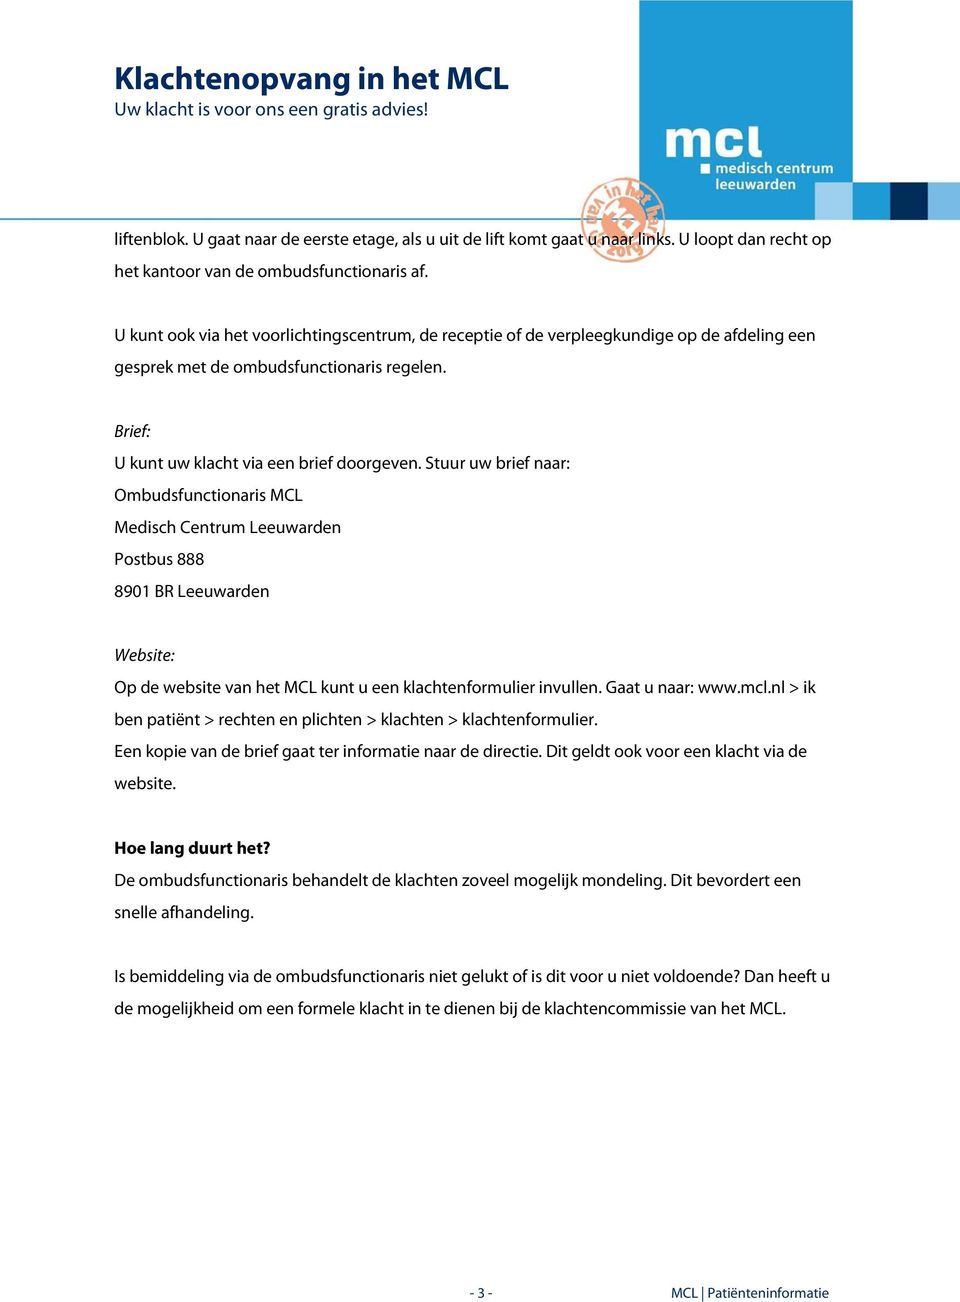 Stuur uw brief naar: Ombudsfunctionaris MCL Medisch Centrum Leeuwarden Website: Op de website van het MCL kunt u een klachtenformulier invullen. Gaat u naar: www.mcl.